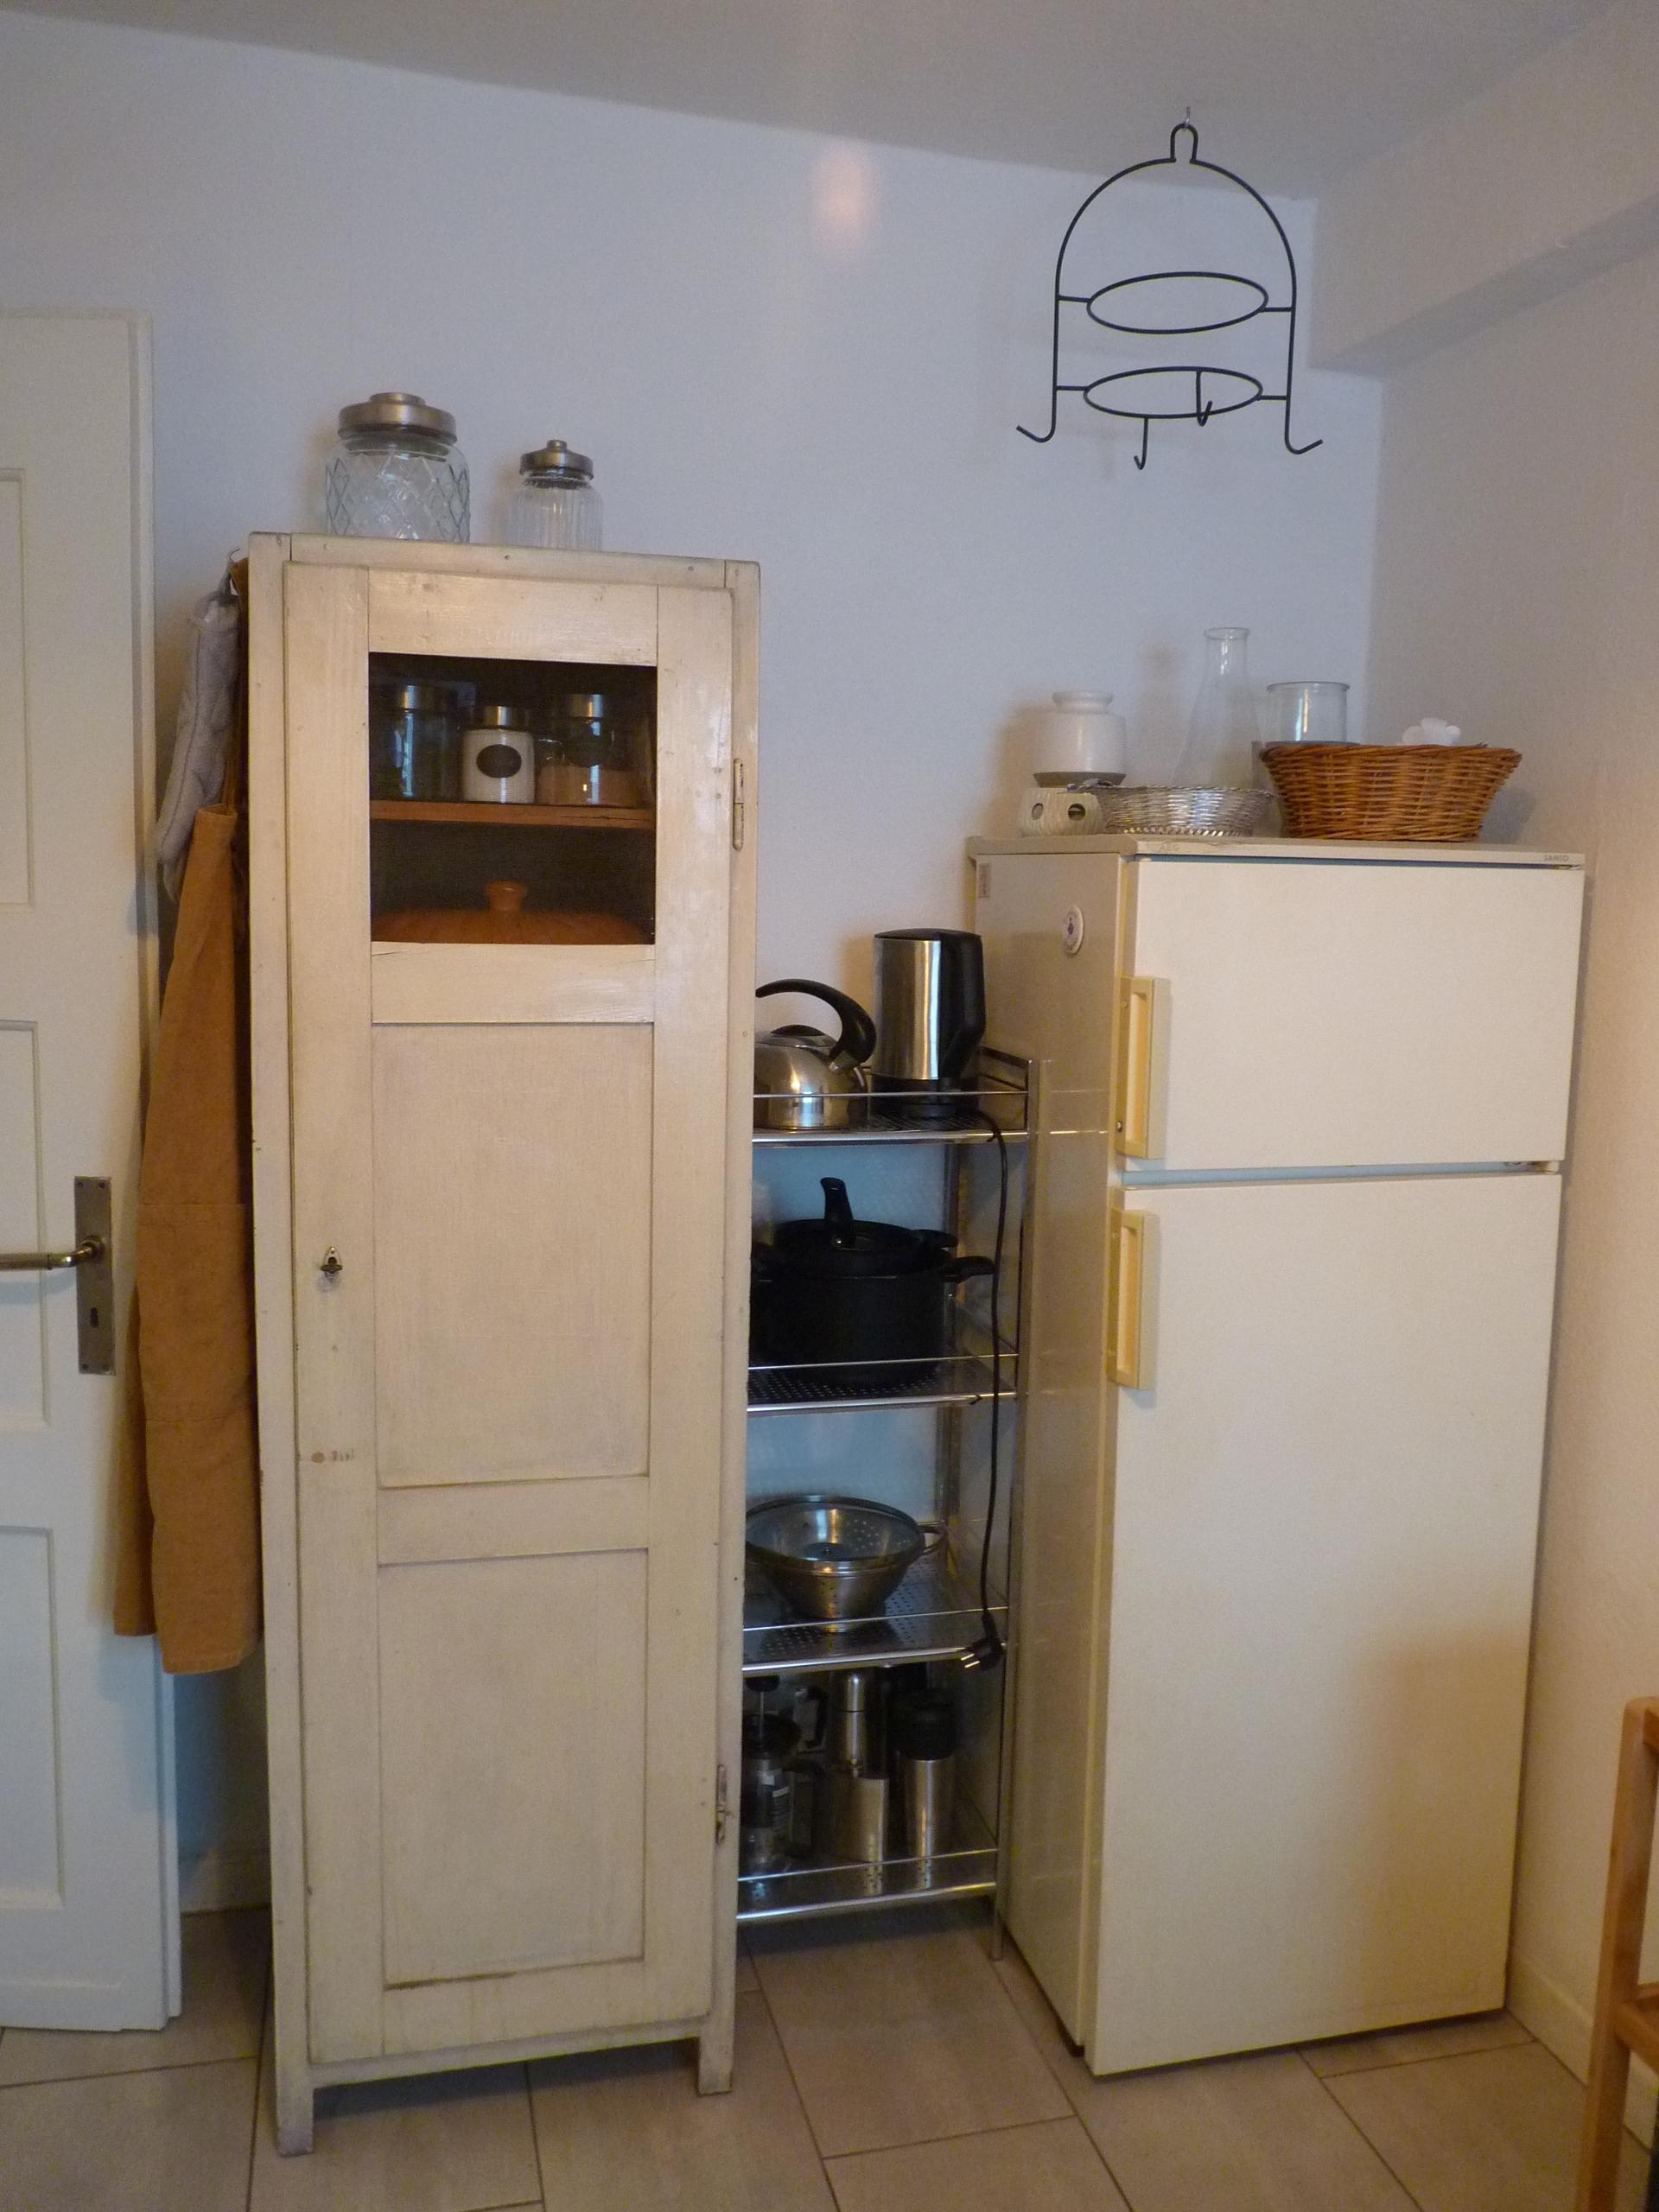 der moderne #Kühlschrank musste weichen
#küche #altbau #hochschrank #antik #kleineküche #ordnung